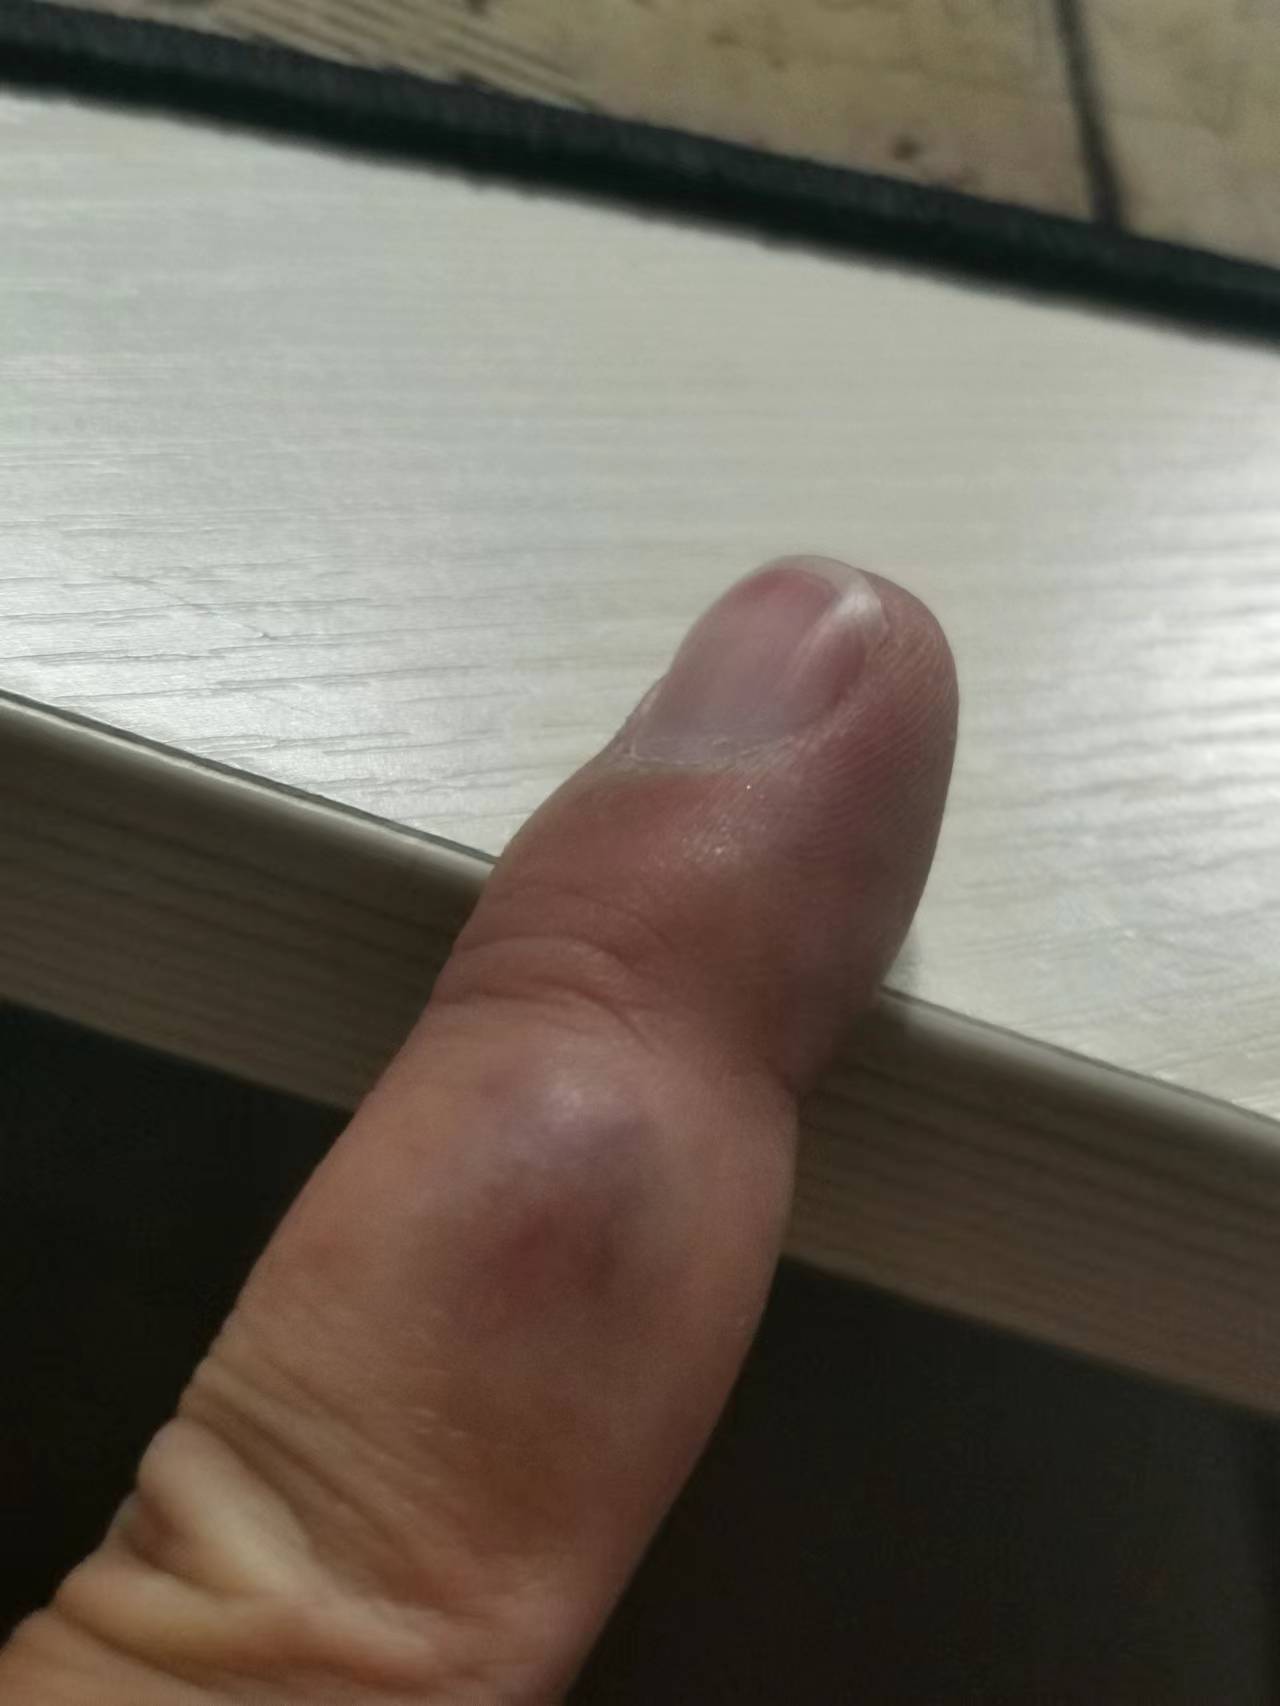 我的右手中指中间的位置长了一个暗红色的血包，不知道是什么症状